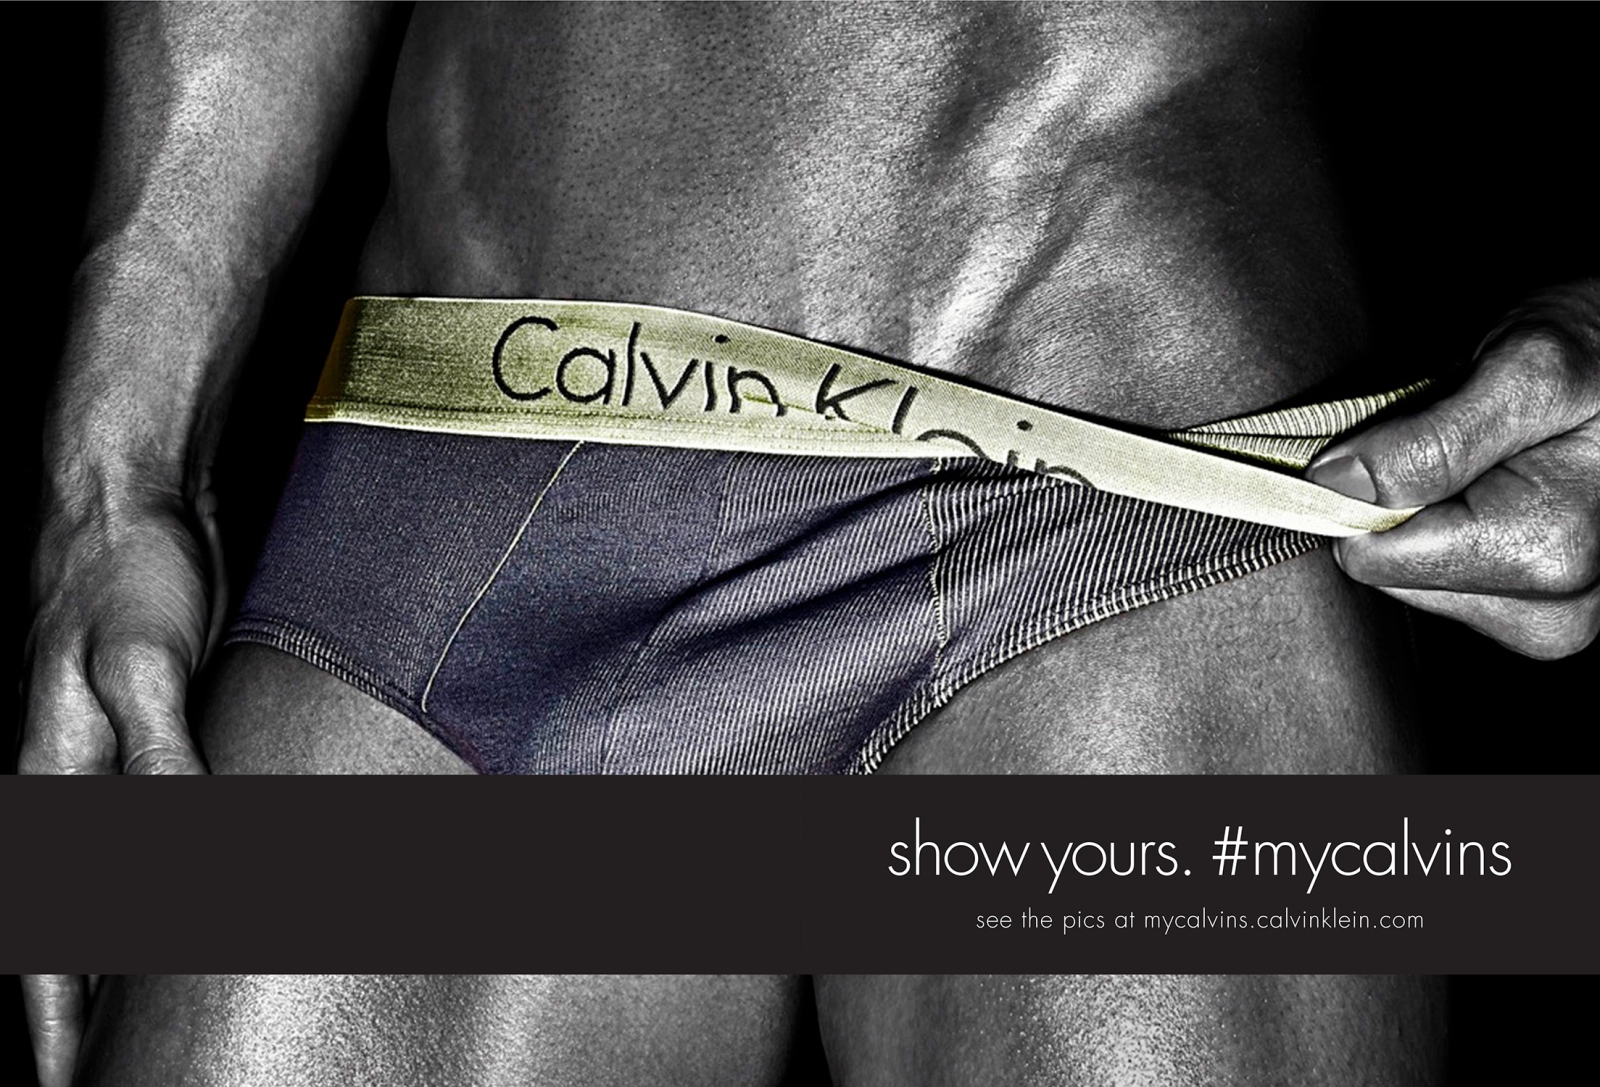 moda | campanhas | sobre moda | roupa íntima | lingerie | Calvin Klein | Calvin Klein show yours | nova campanha da Calvin Klein